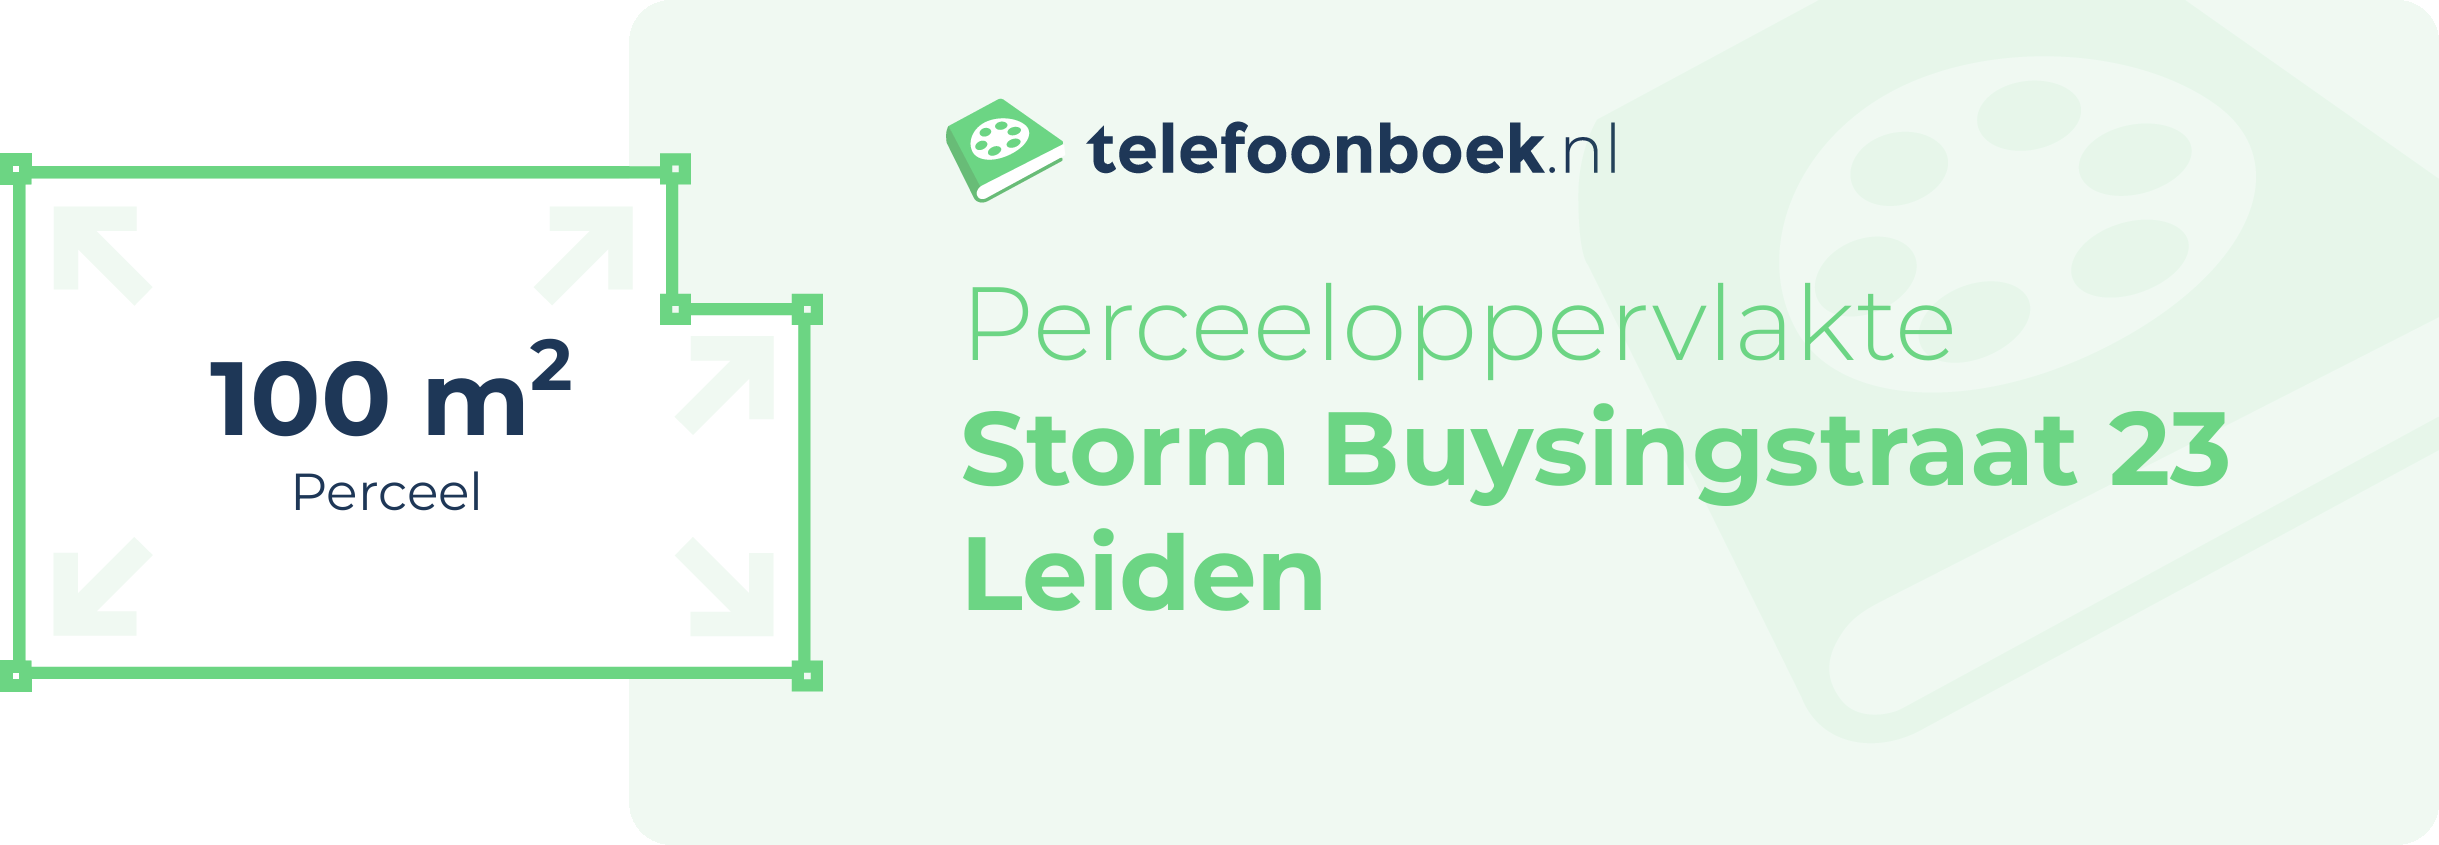 Perceeloppervlakte Storm Buysingstraat 23 Leiden